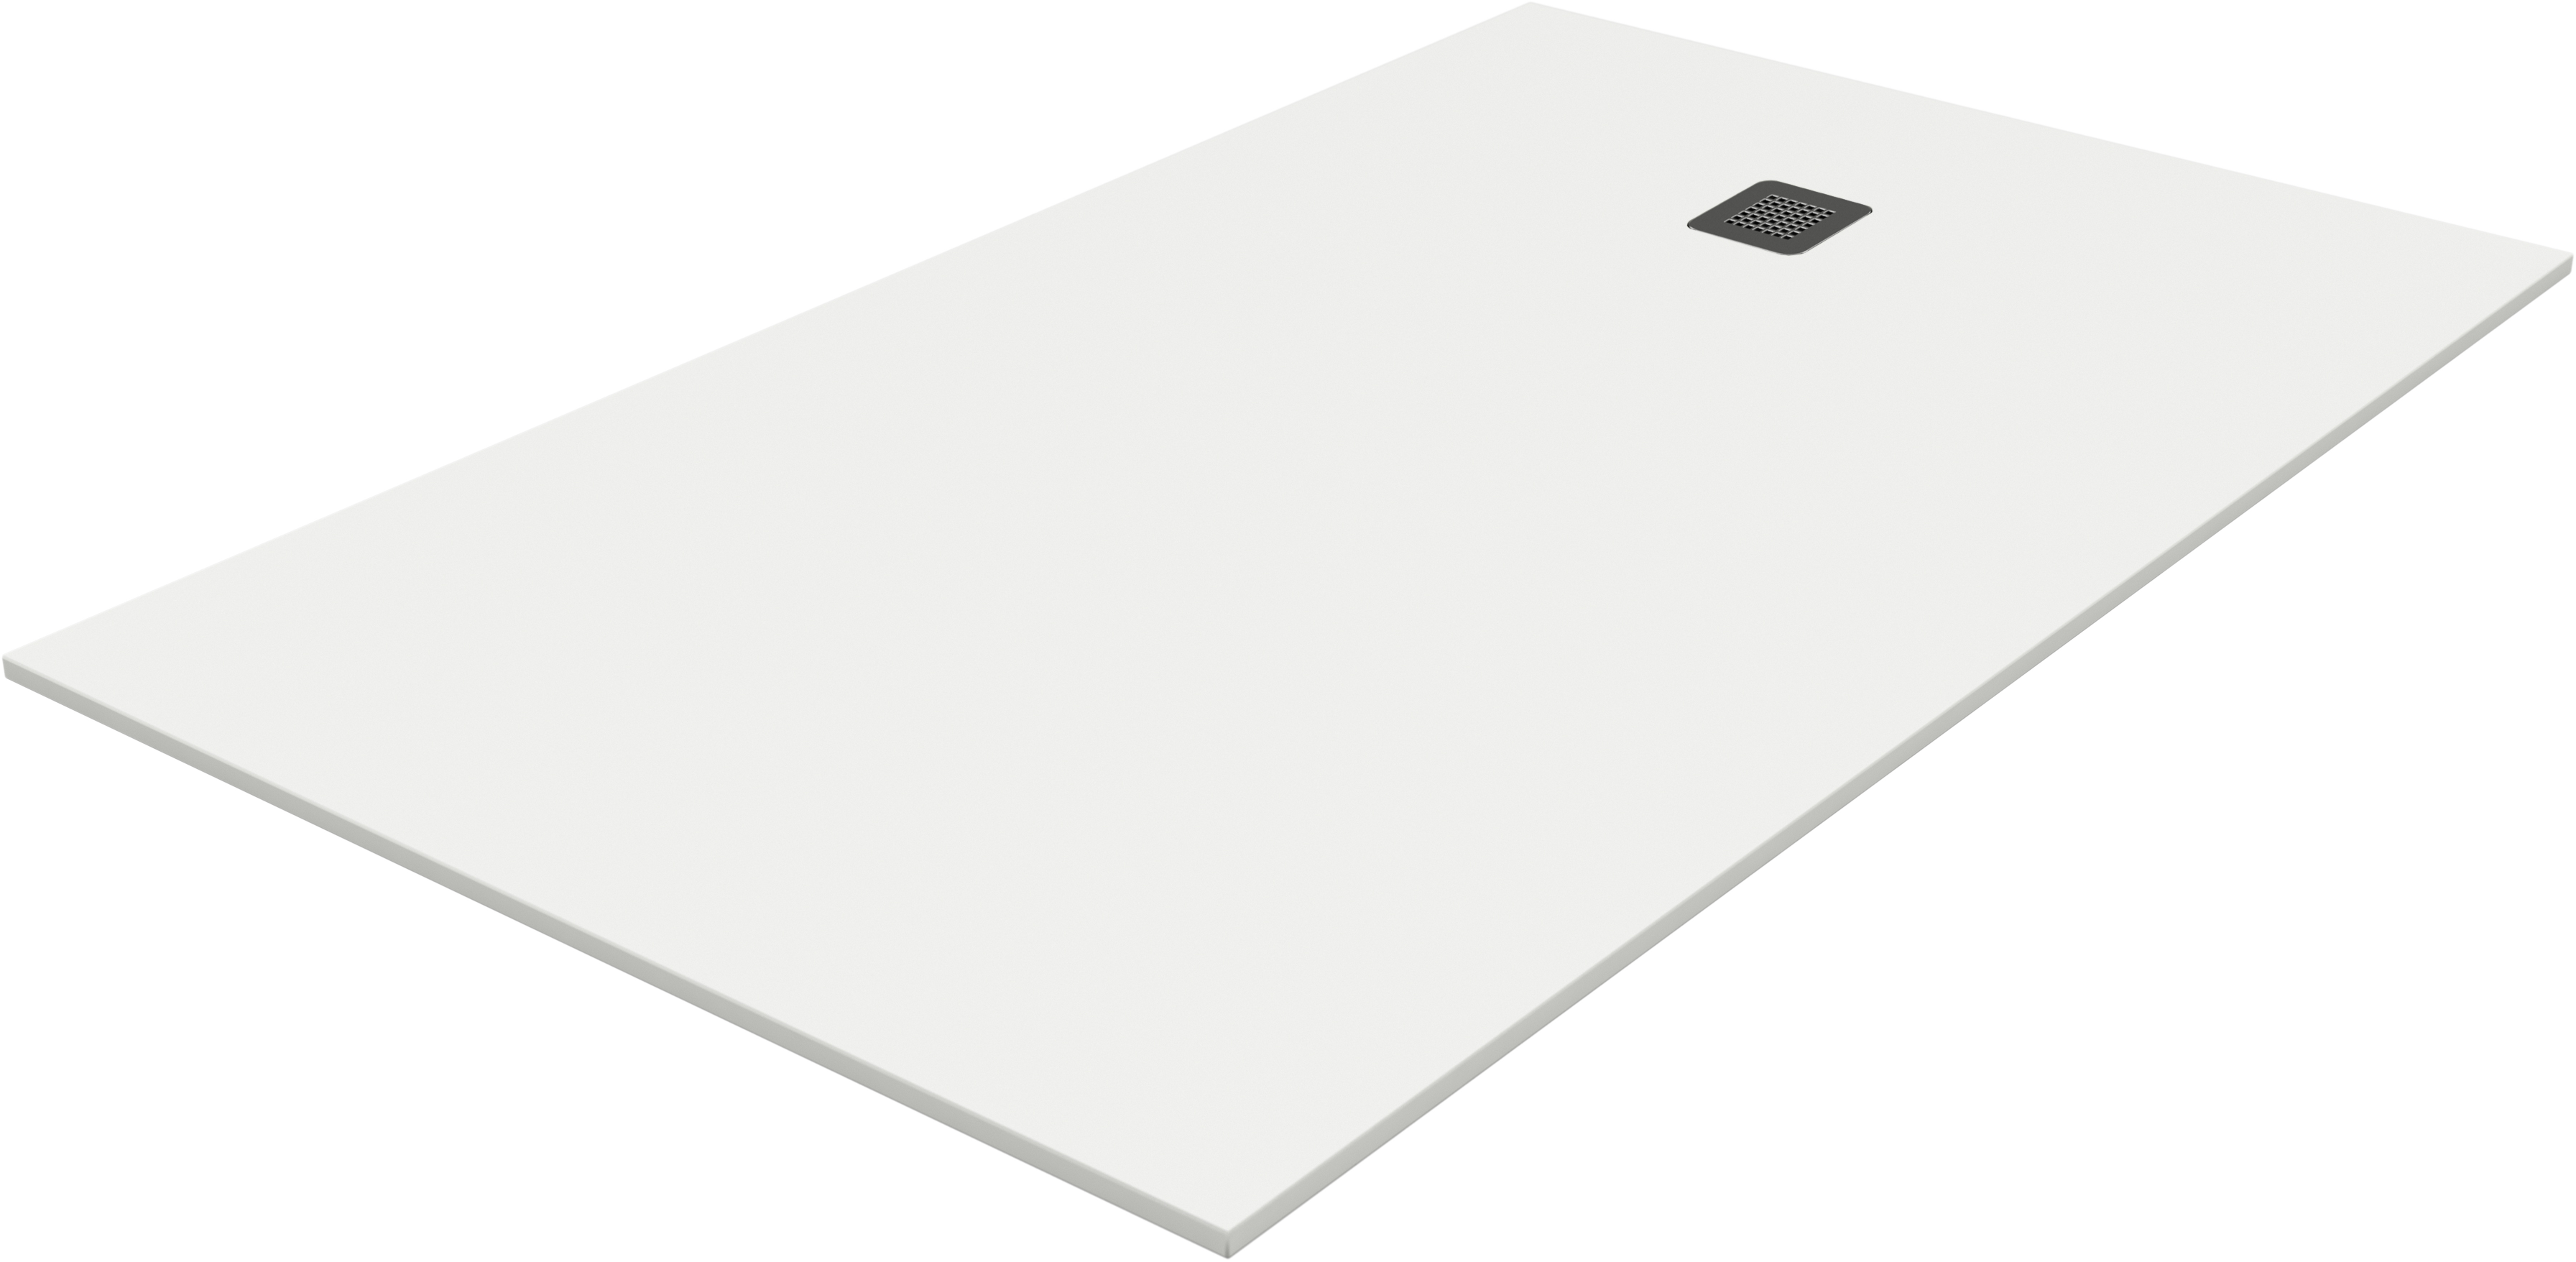 Plato de ducha pietra 160x70 cm blanco